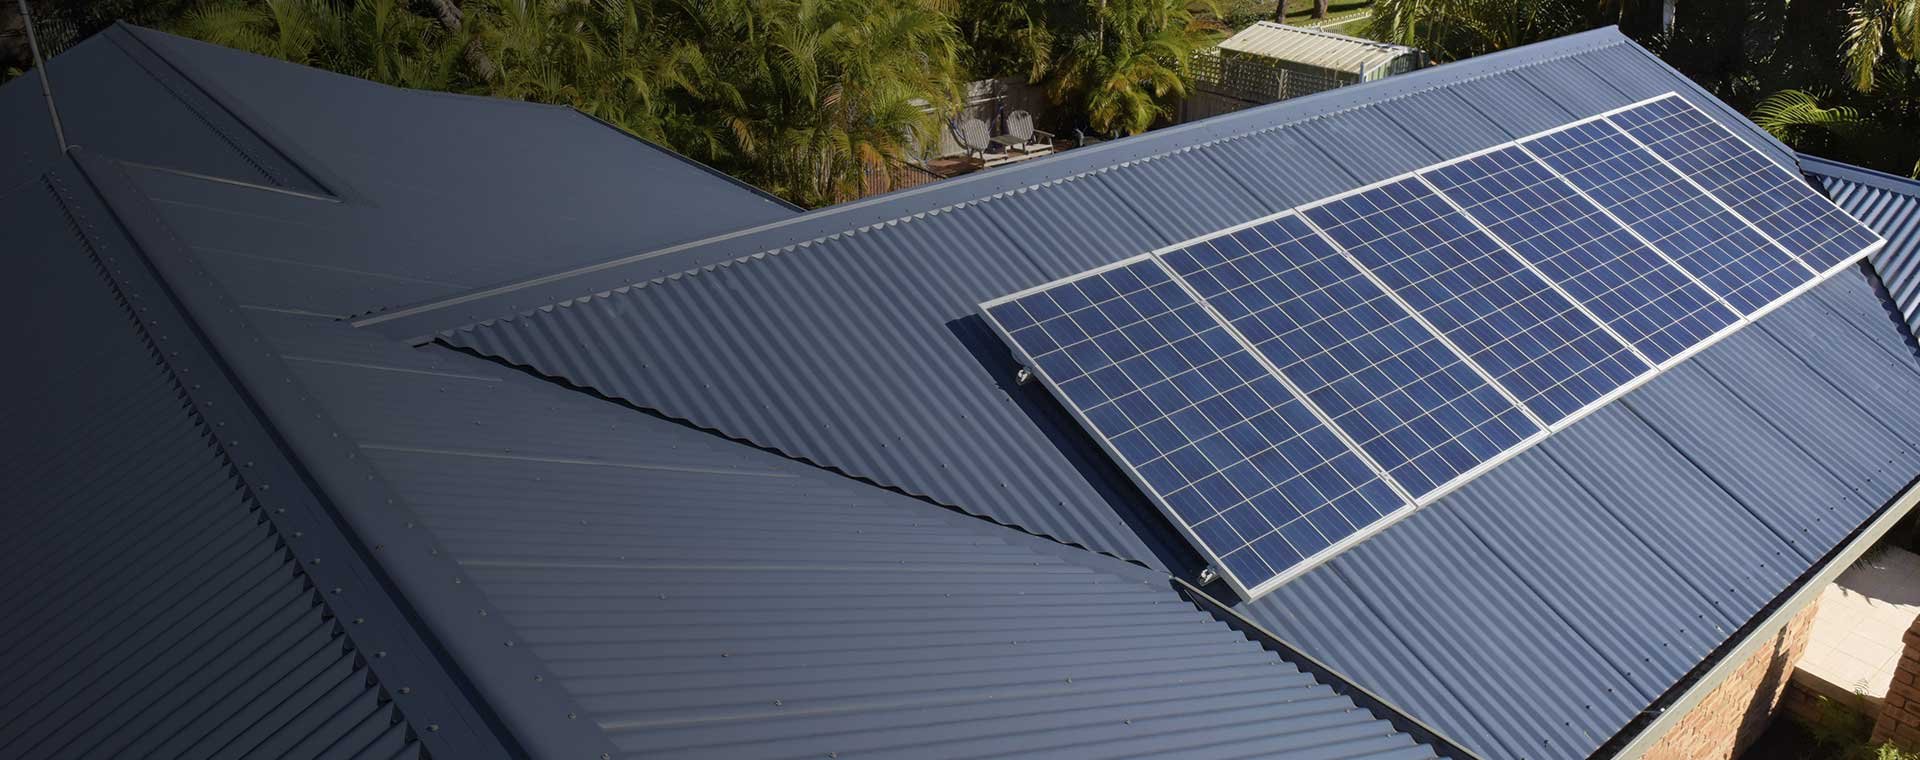 MV Solar Ebrochure Solar Services Sydney